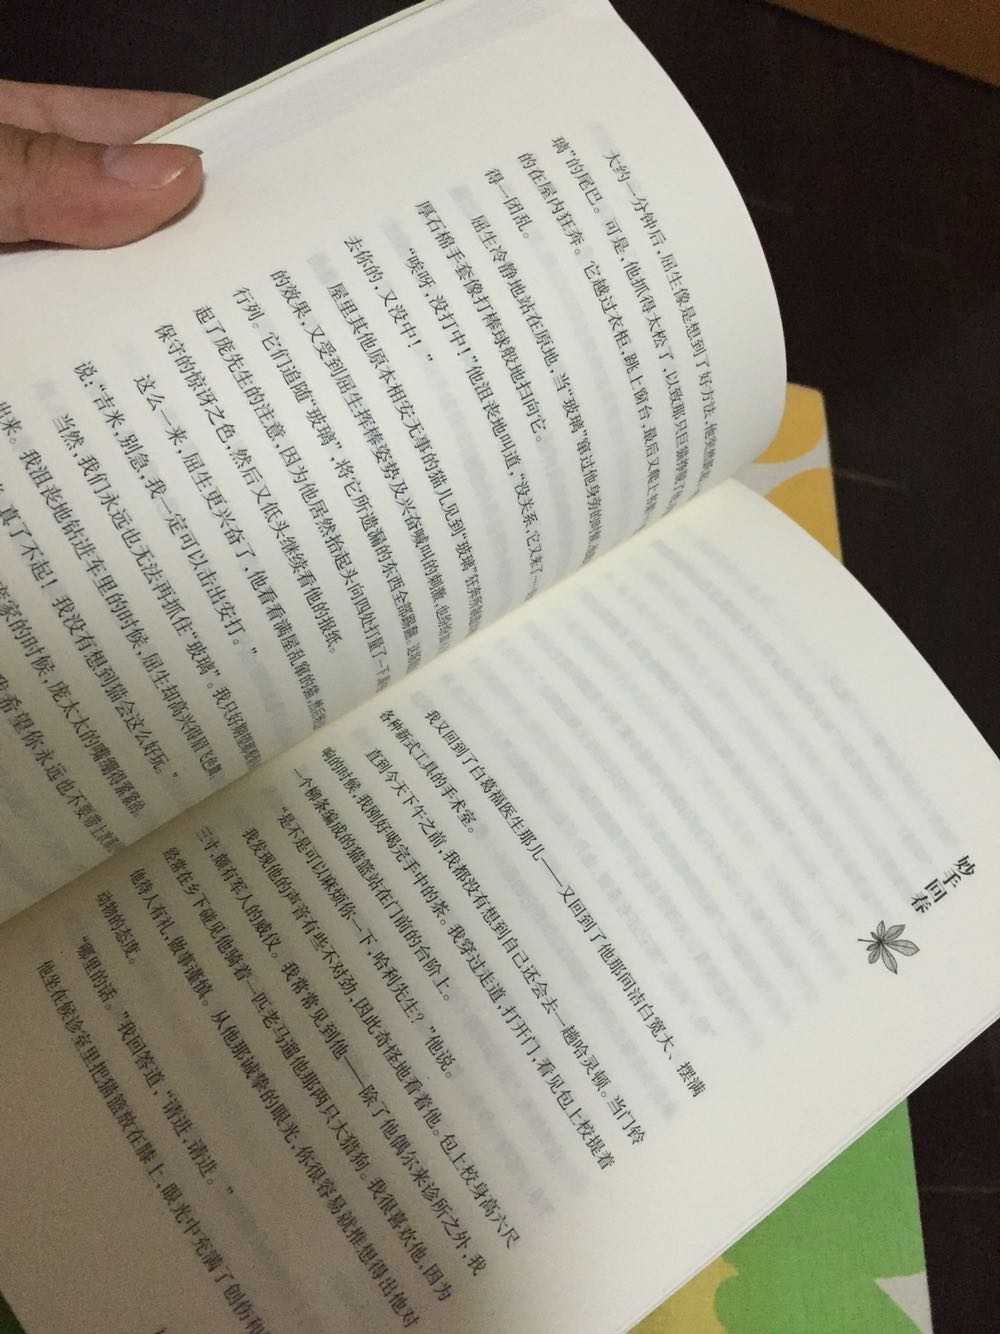 本书由总多感人生动的小故事组成，如果热爱动物和文学，这个作者的这本代表作值得入手，台湾早翻译出版了，记得叫大地之歌 云云